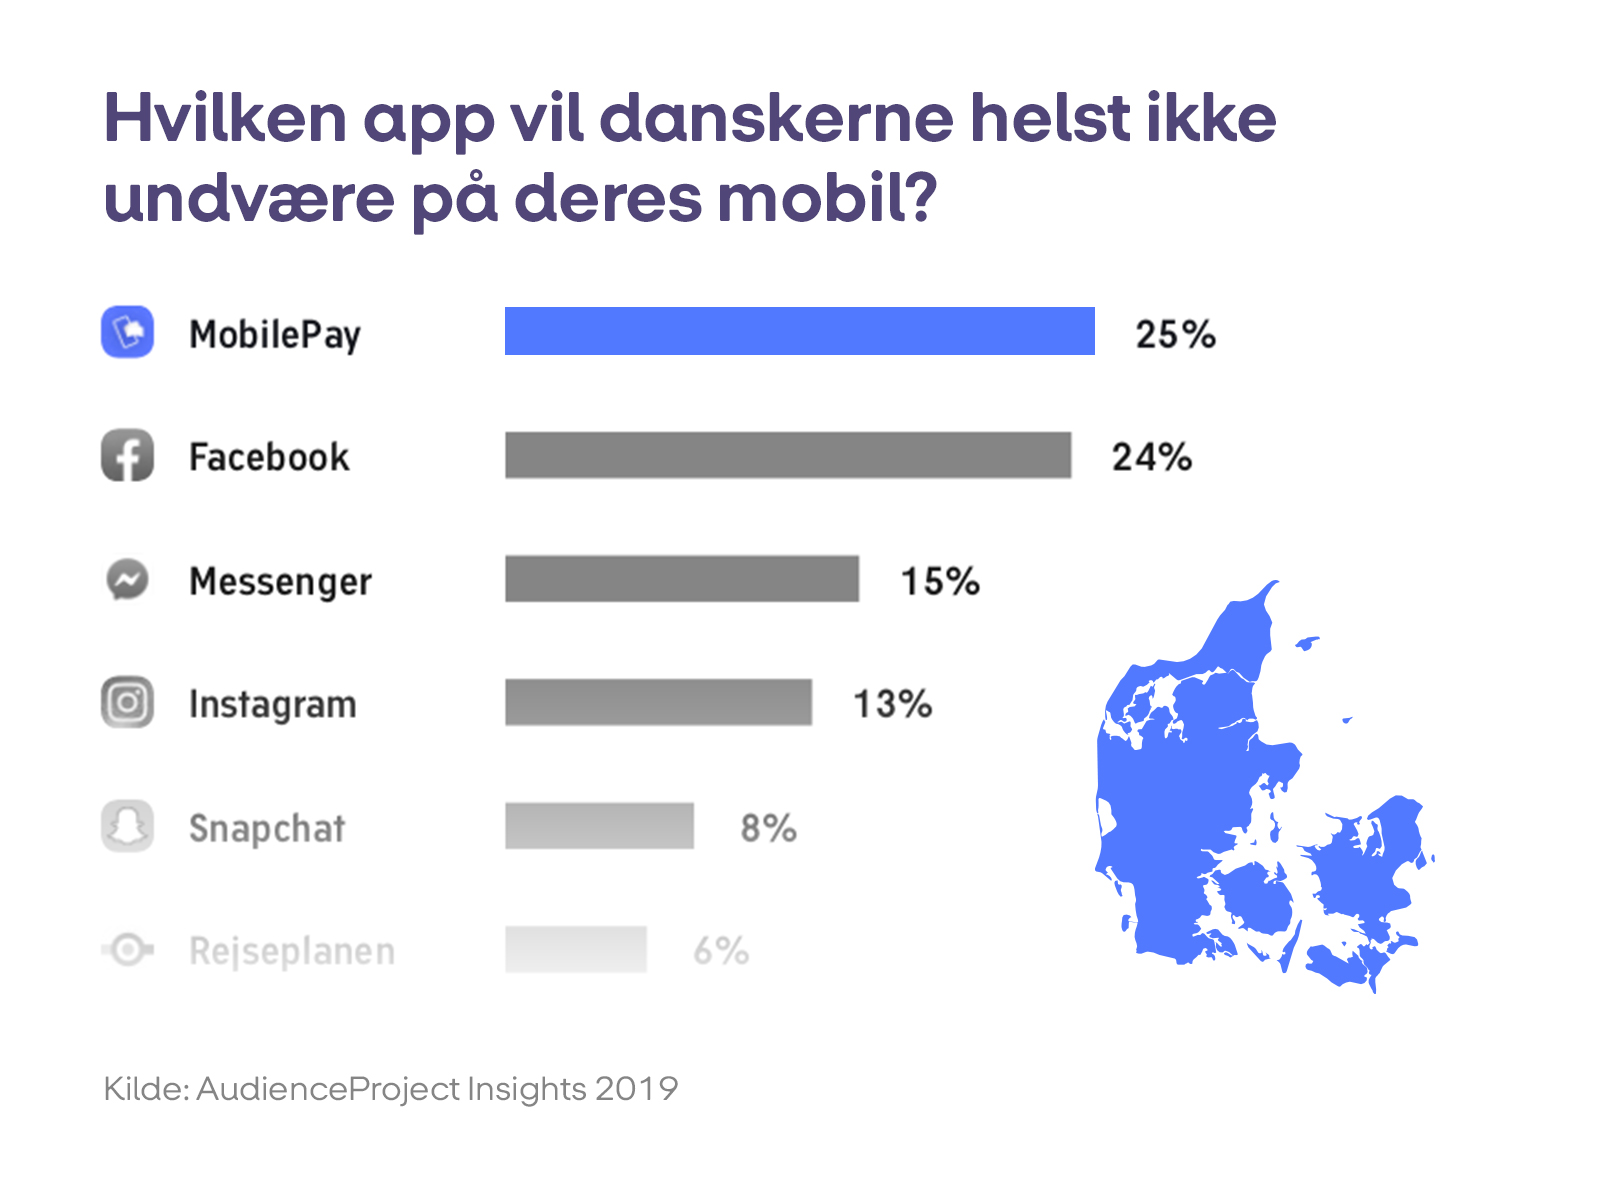 Billede til nyheden om at MobilePay er den app, danskerne nødigst vil undvære